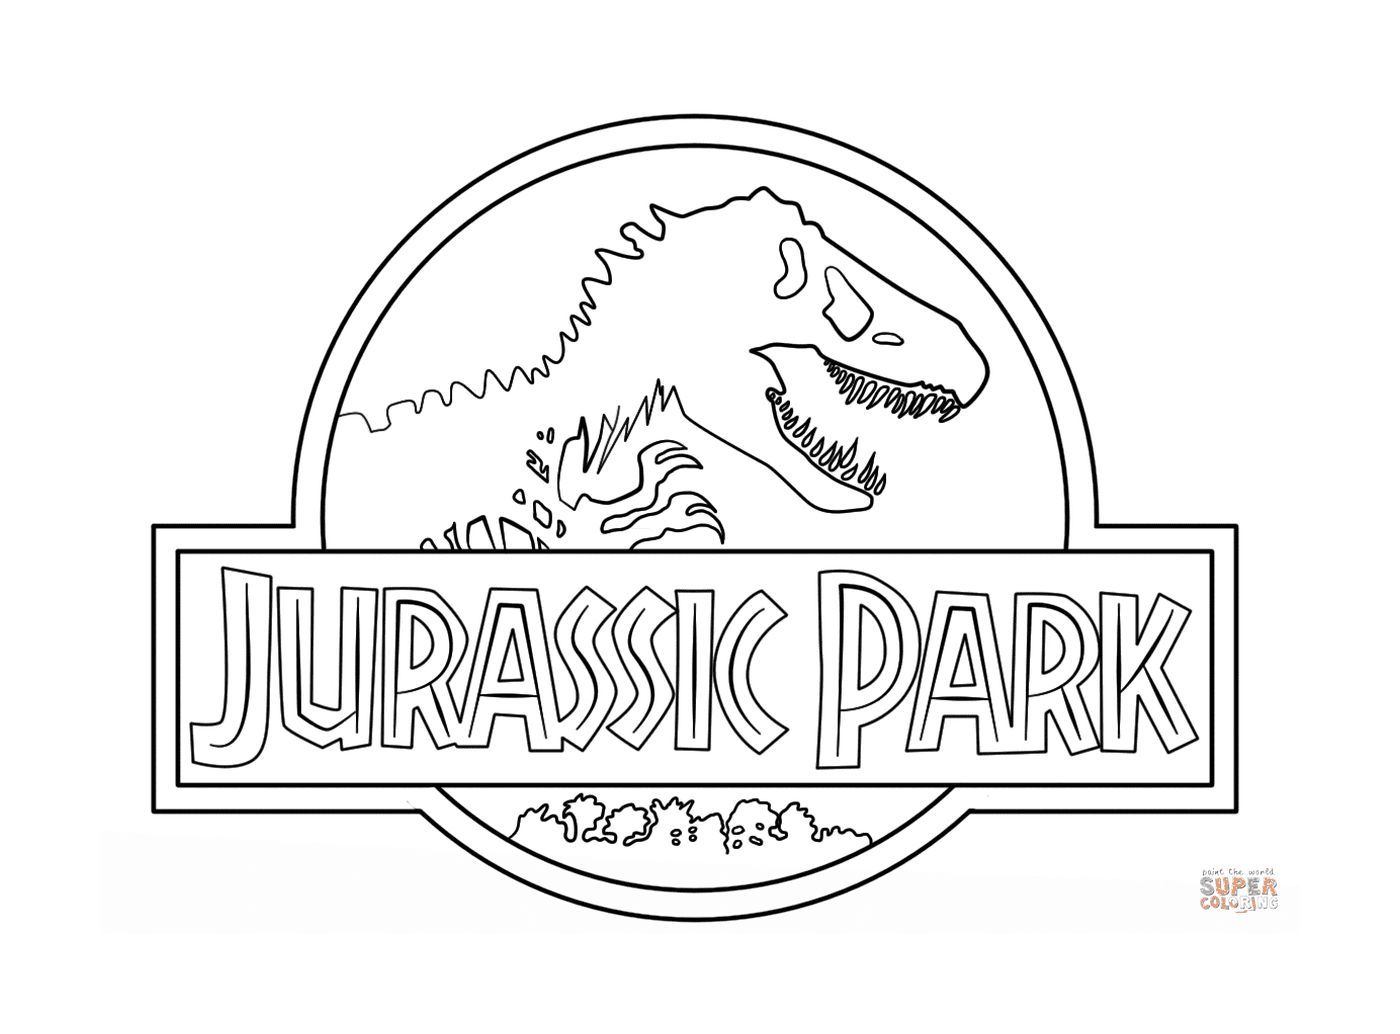  Logo Jurassic公园,环境,首先是 